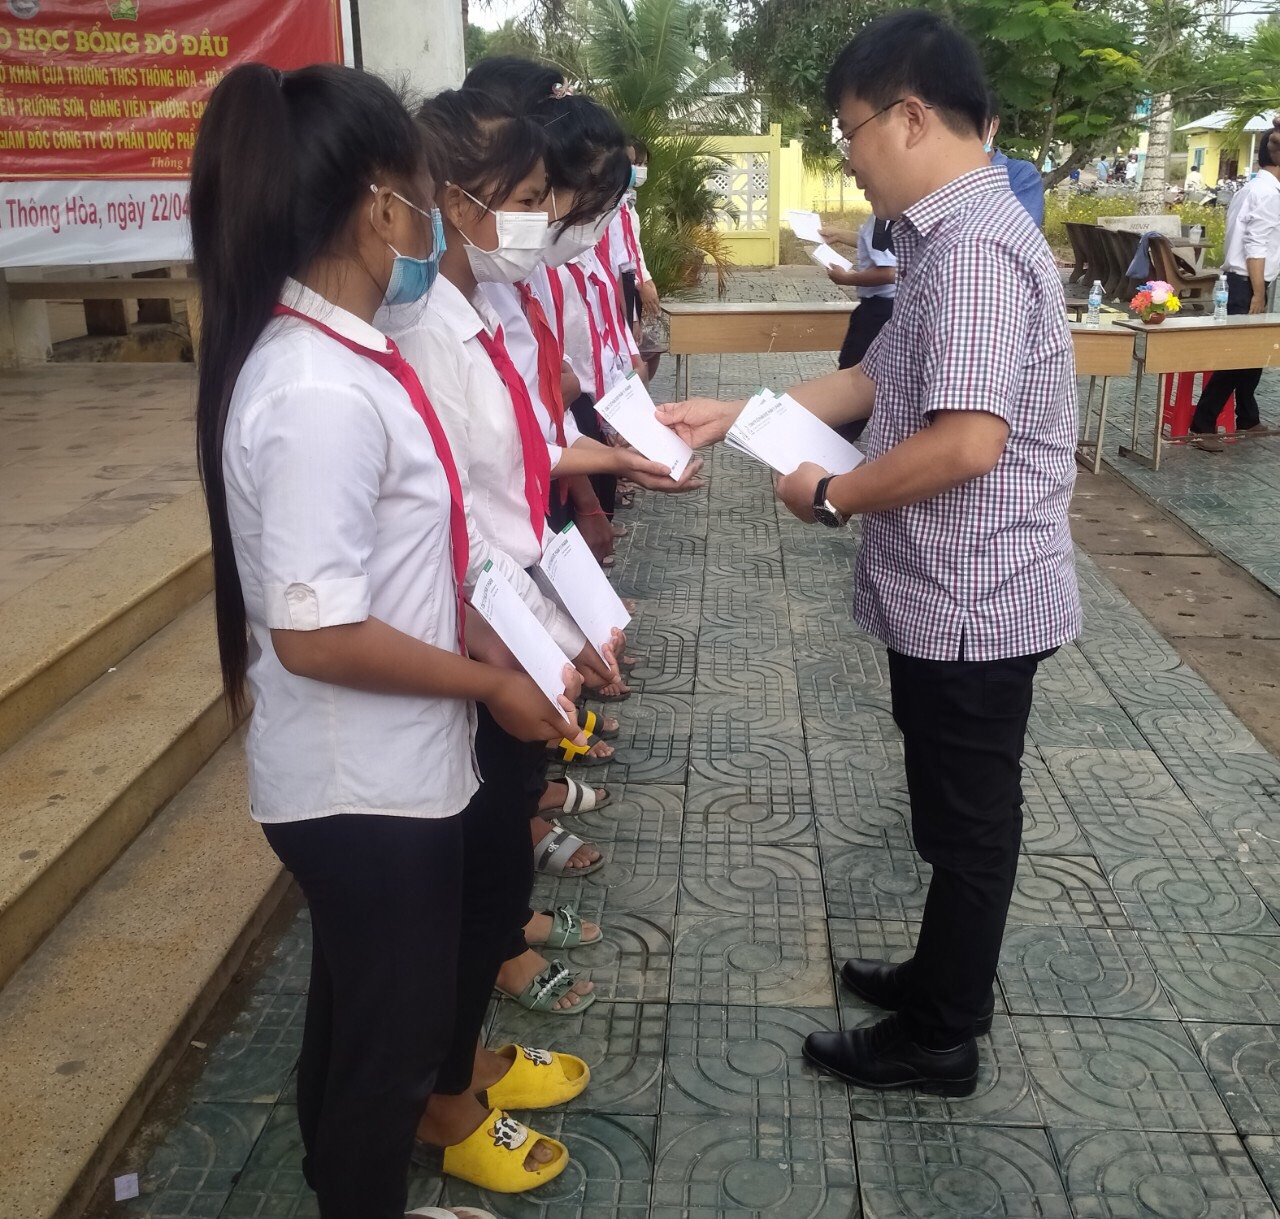 Ông Hà Ngọc Sơn, Tổng Giám đốc TV.Pharm, Chi hội trưởng Chi hội Giáo dục chăm sóc sức khỏe cộng đồng TVPharm trao tặng học bổng cho các em học sinh.